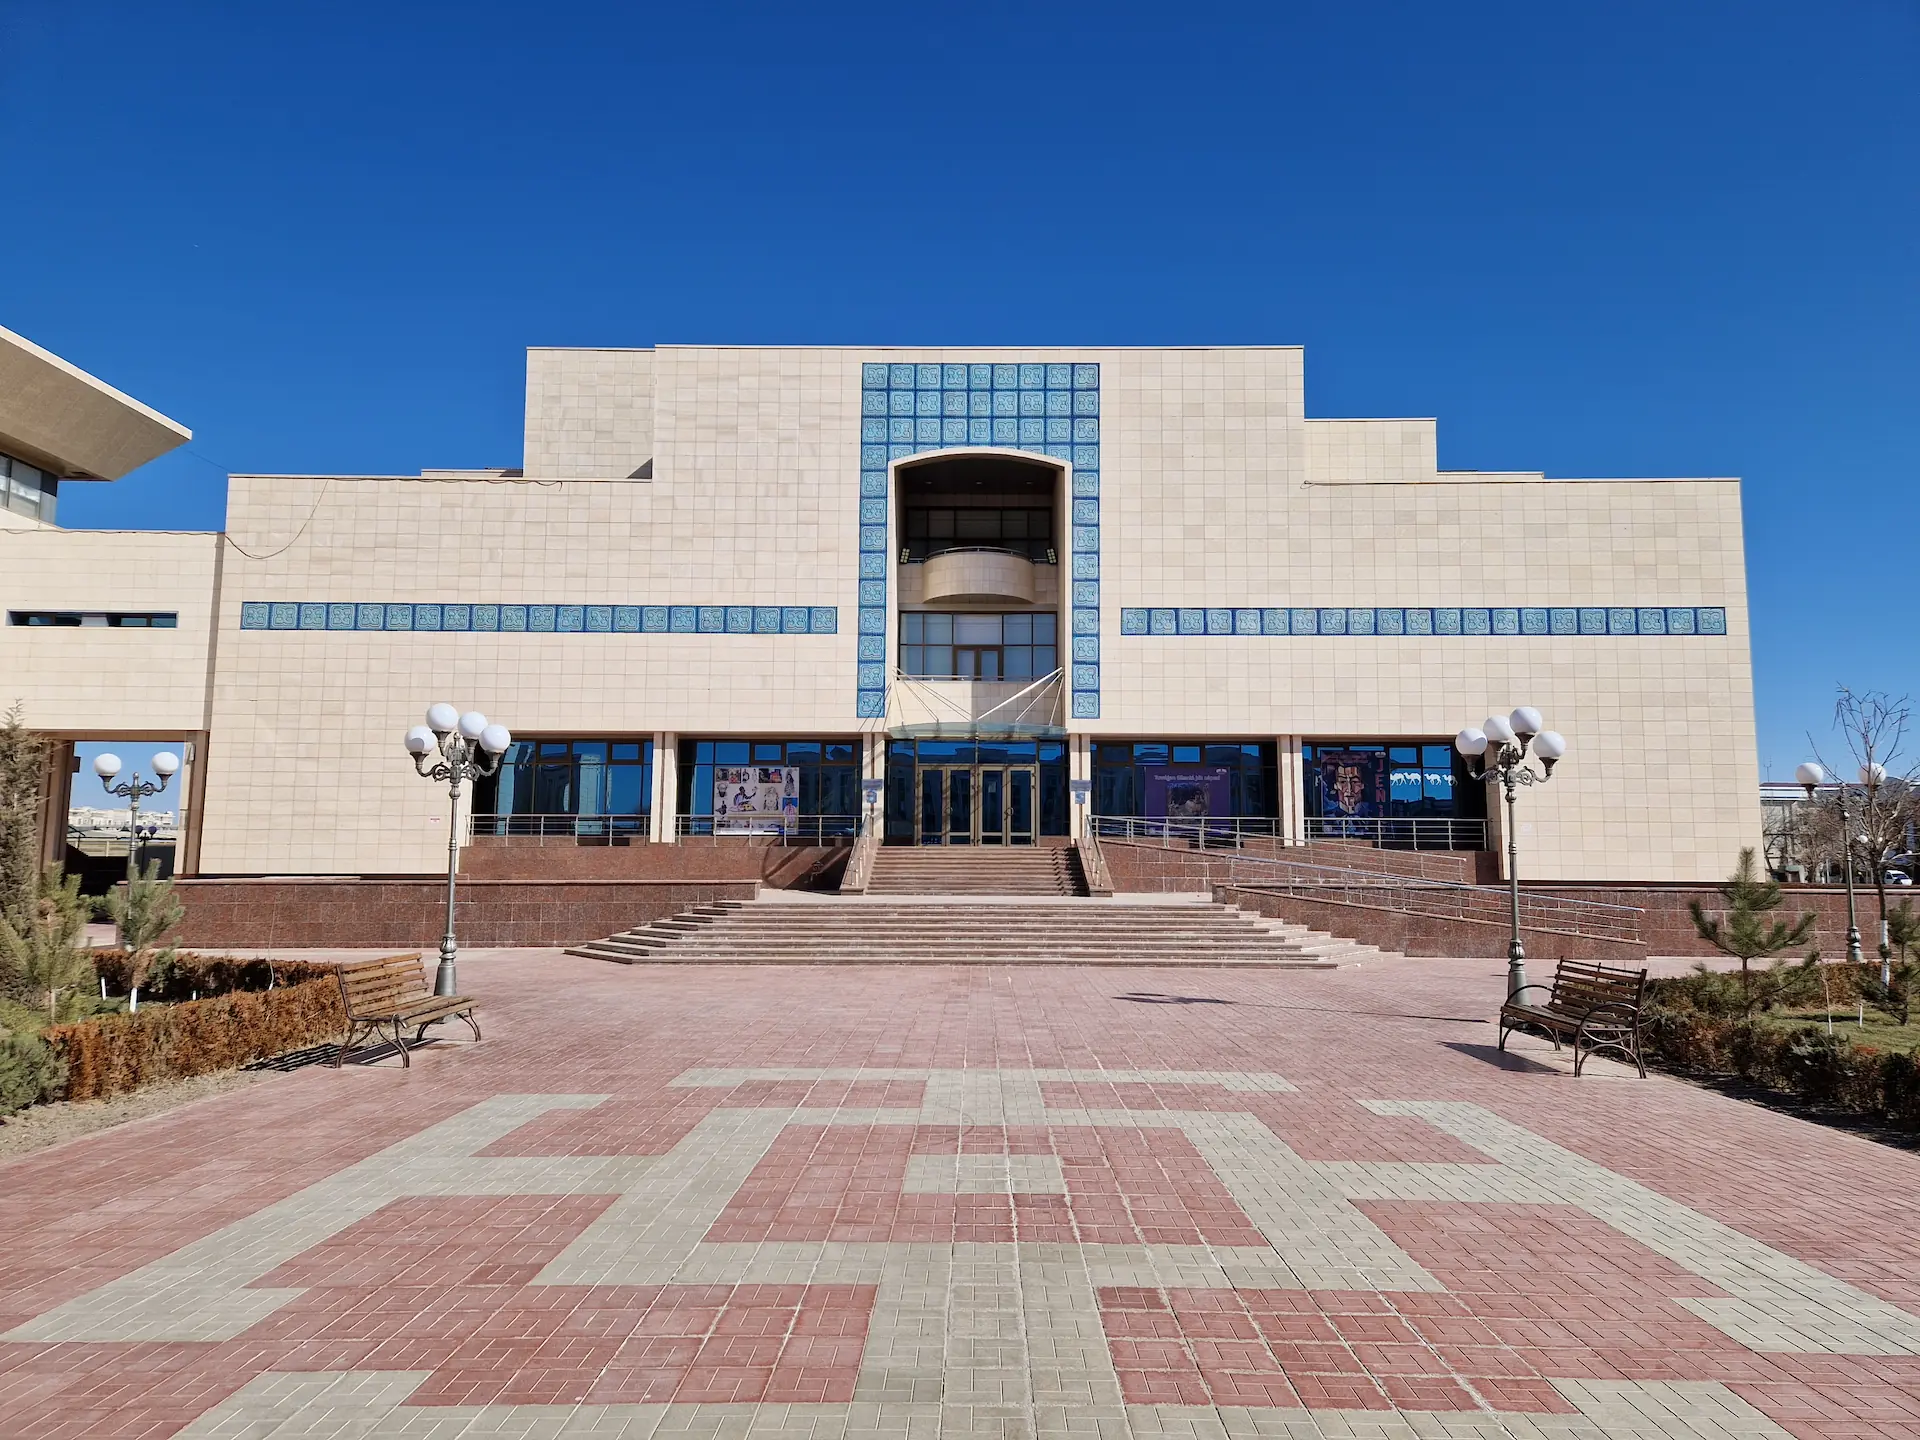 La façade impressionnante du musée vue de face, gros bloc blancs coupé d'une ligne horizontale bleue. L'arche lignée de bleu au-dessus de la porte rappelle un peu l'architecture des madrassas de Timour, version brutaliste.